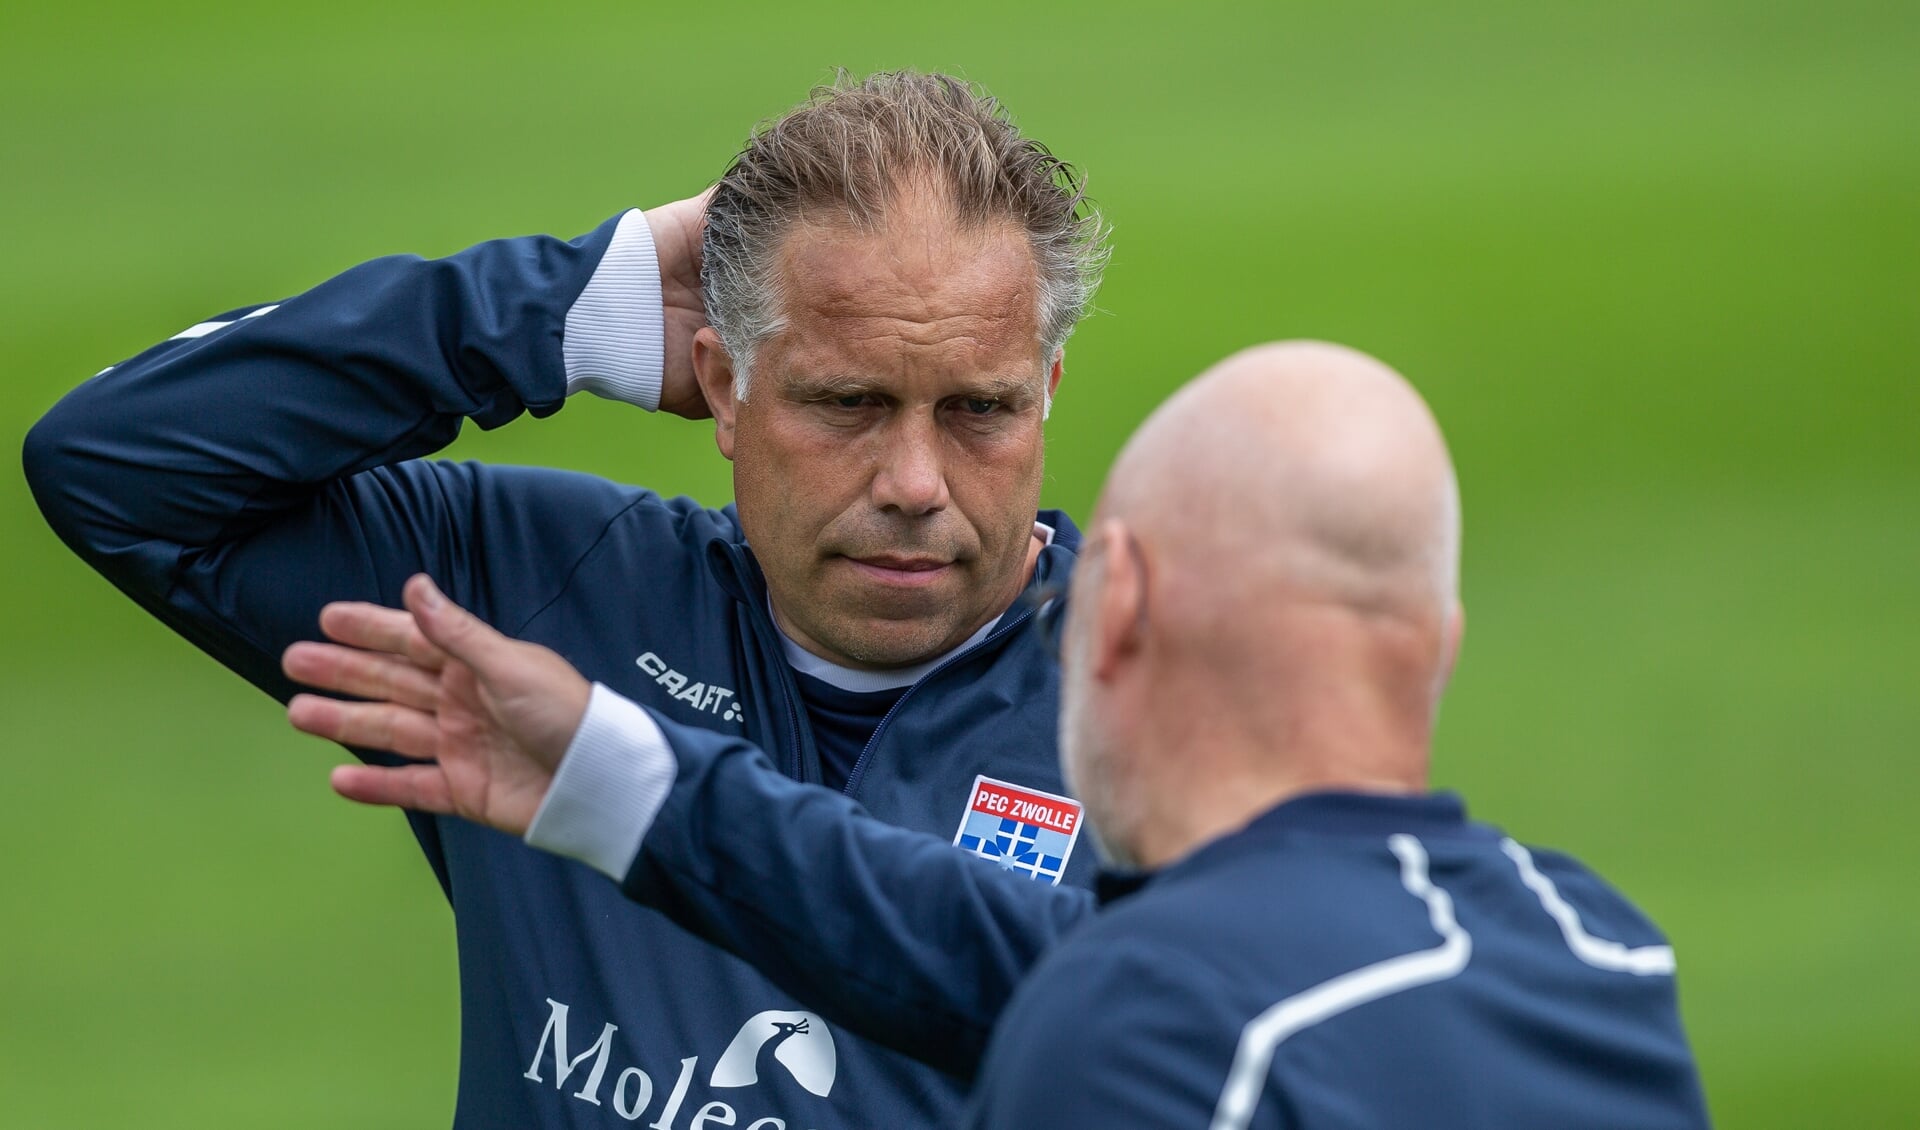 Stof tot nadenken voor trainer Art Langeler na de 3-1 nederlaag tegen Heracles in de laatste oefenwedstrijd. 